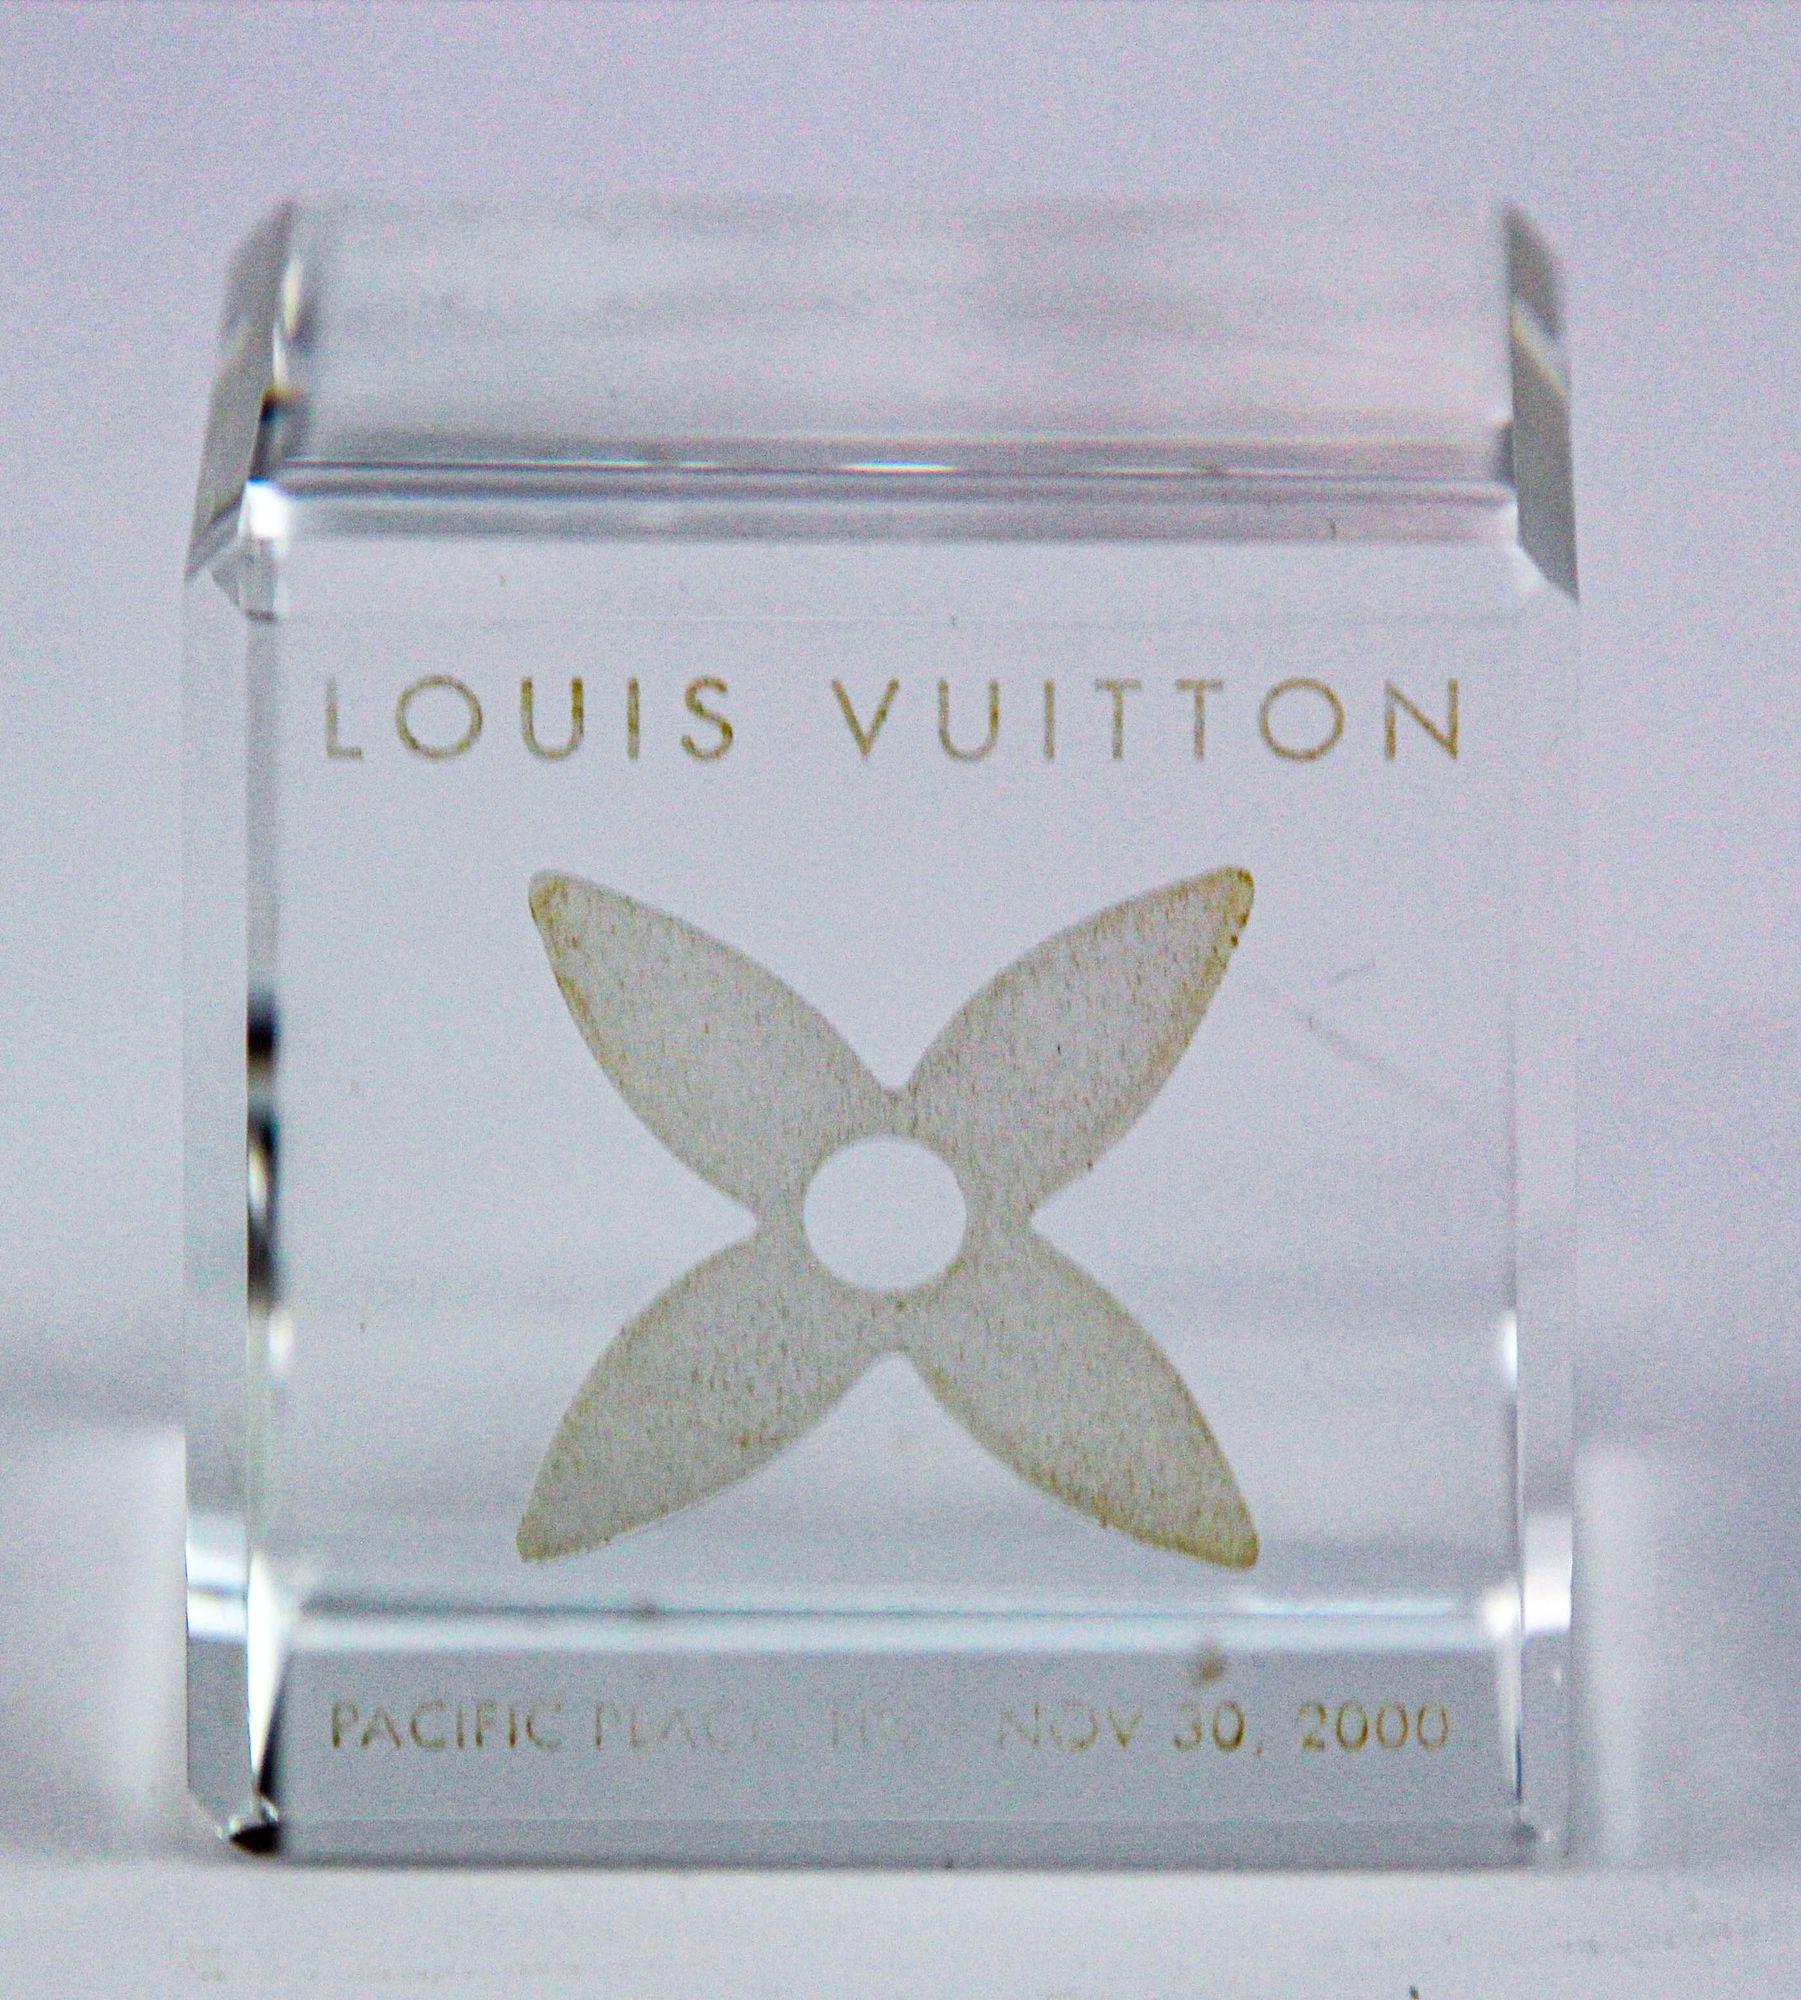 Dieser LOUIS VUITTON-Würfel besteht aus Kristall.
Die Gesichter stellen das Monogramm der Marke dar.
Ein Sammlerstück, das auch als Briefbeschwerer auf dem Schreibtisch verwendet werden kann.
VIP-Geschenk aus dem Jahr 2000 von Louis Vuitton Hong